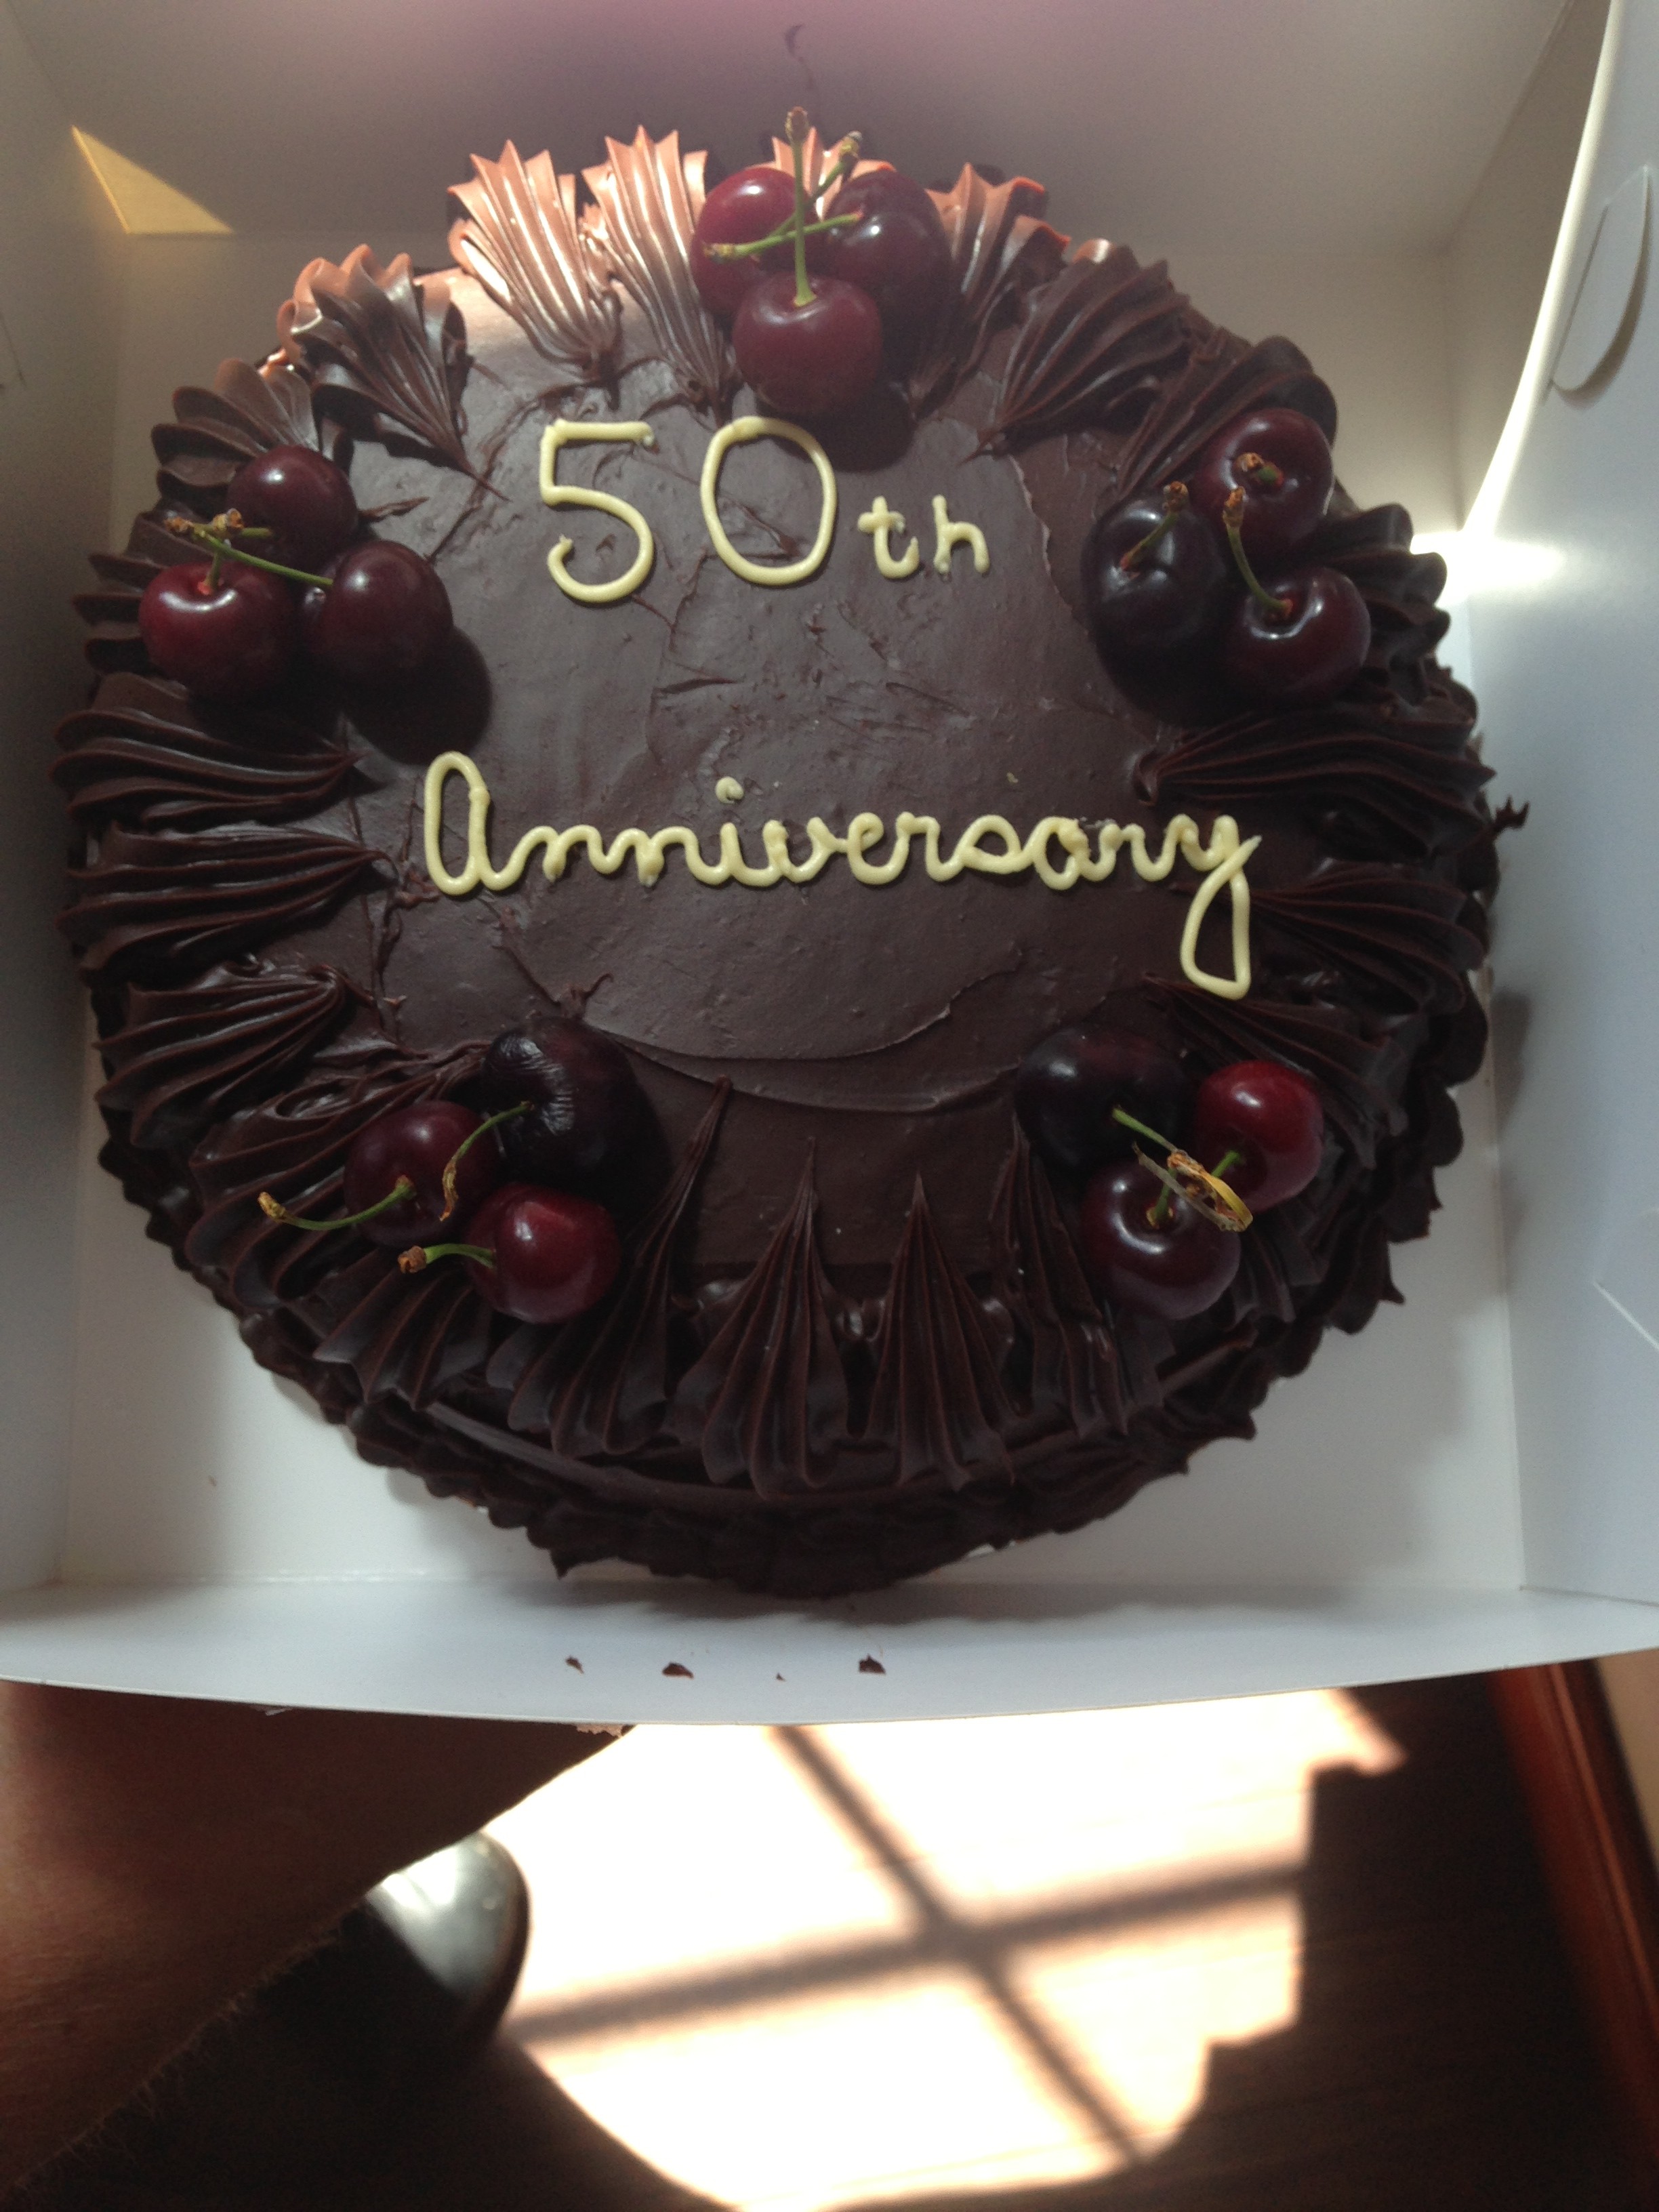 4. Anniversary Cake